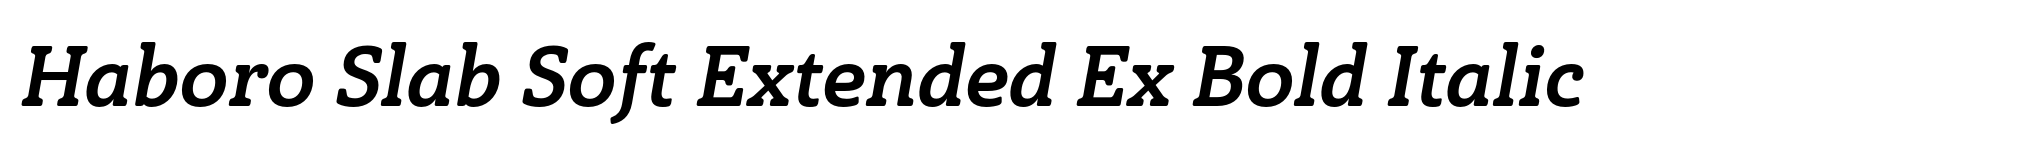 Haboro Slab Soft Extended Ex Bold Italic image